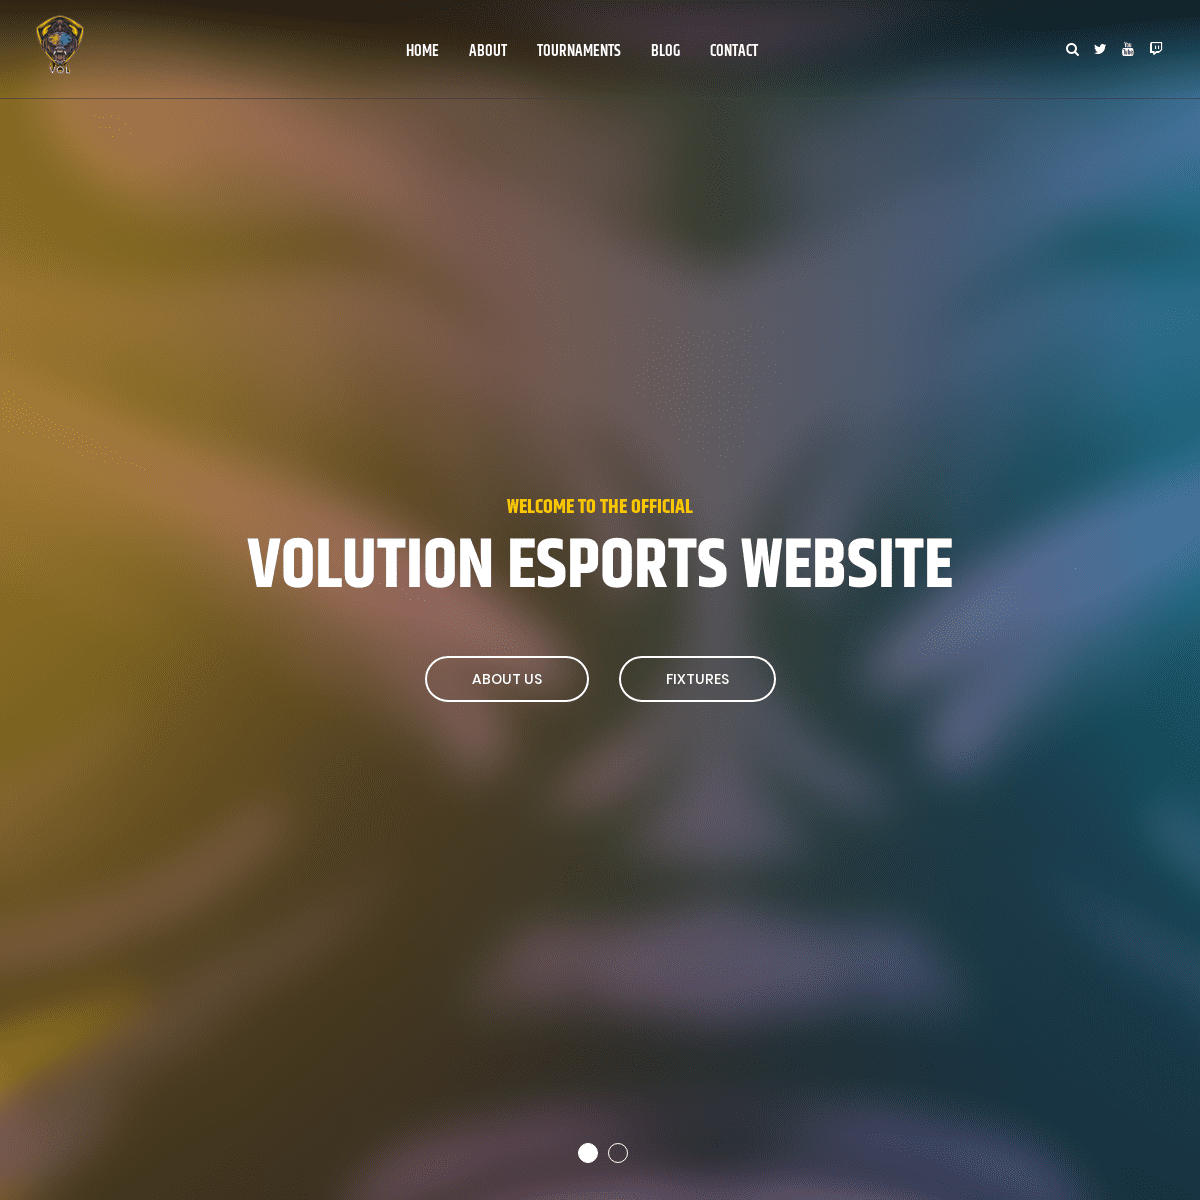 VOL – Volution eSports